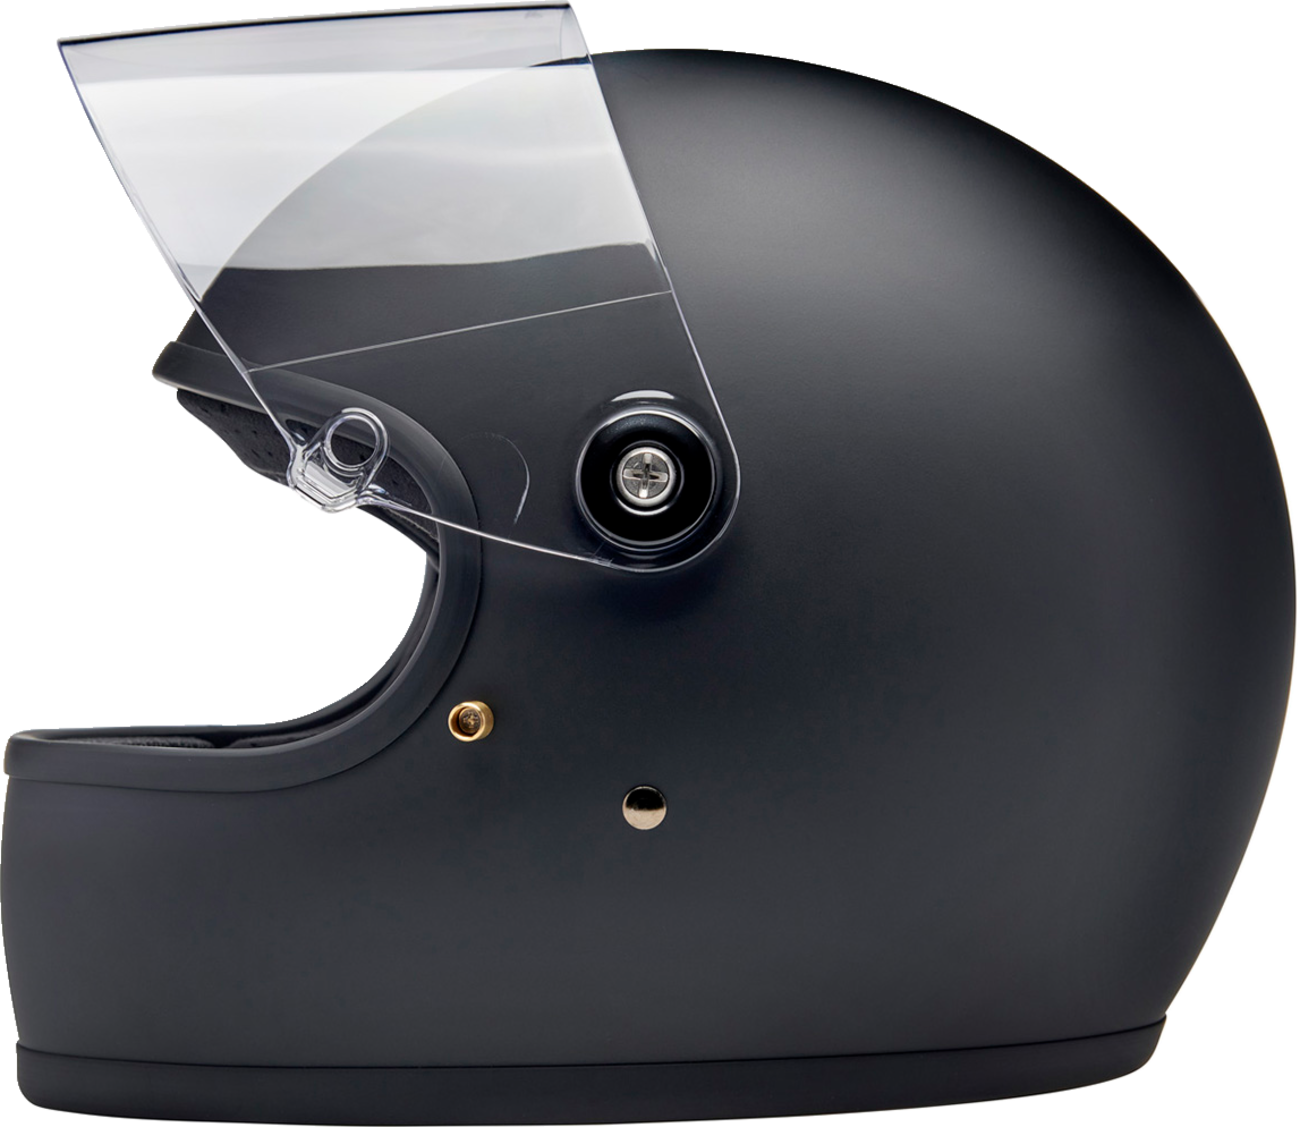 BILTWELL Gringo S Helmet - Flat Black - Small 1003-201-502